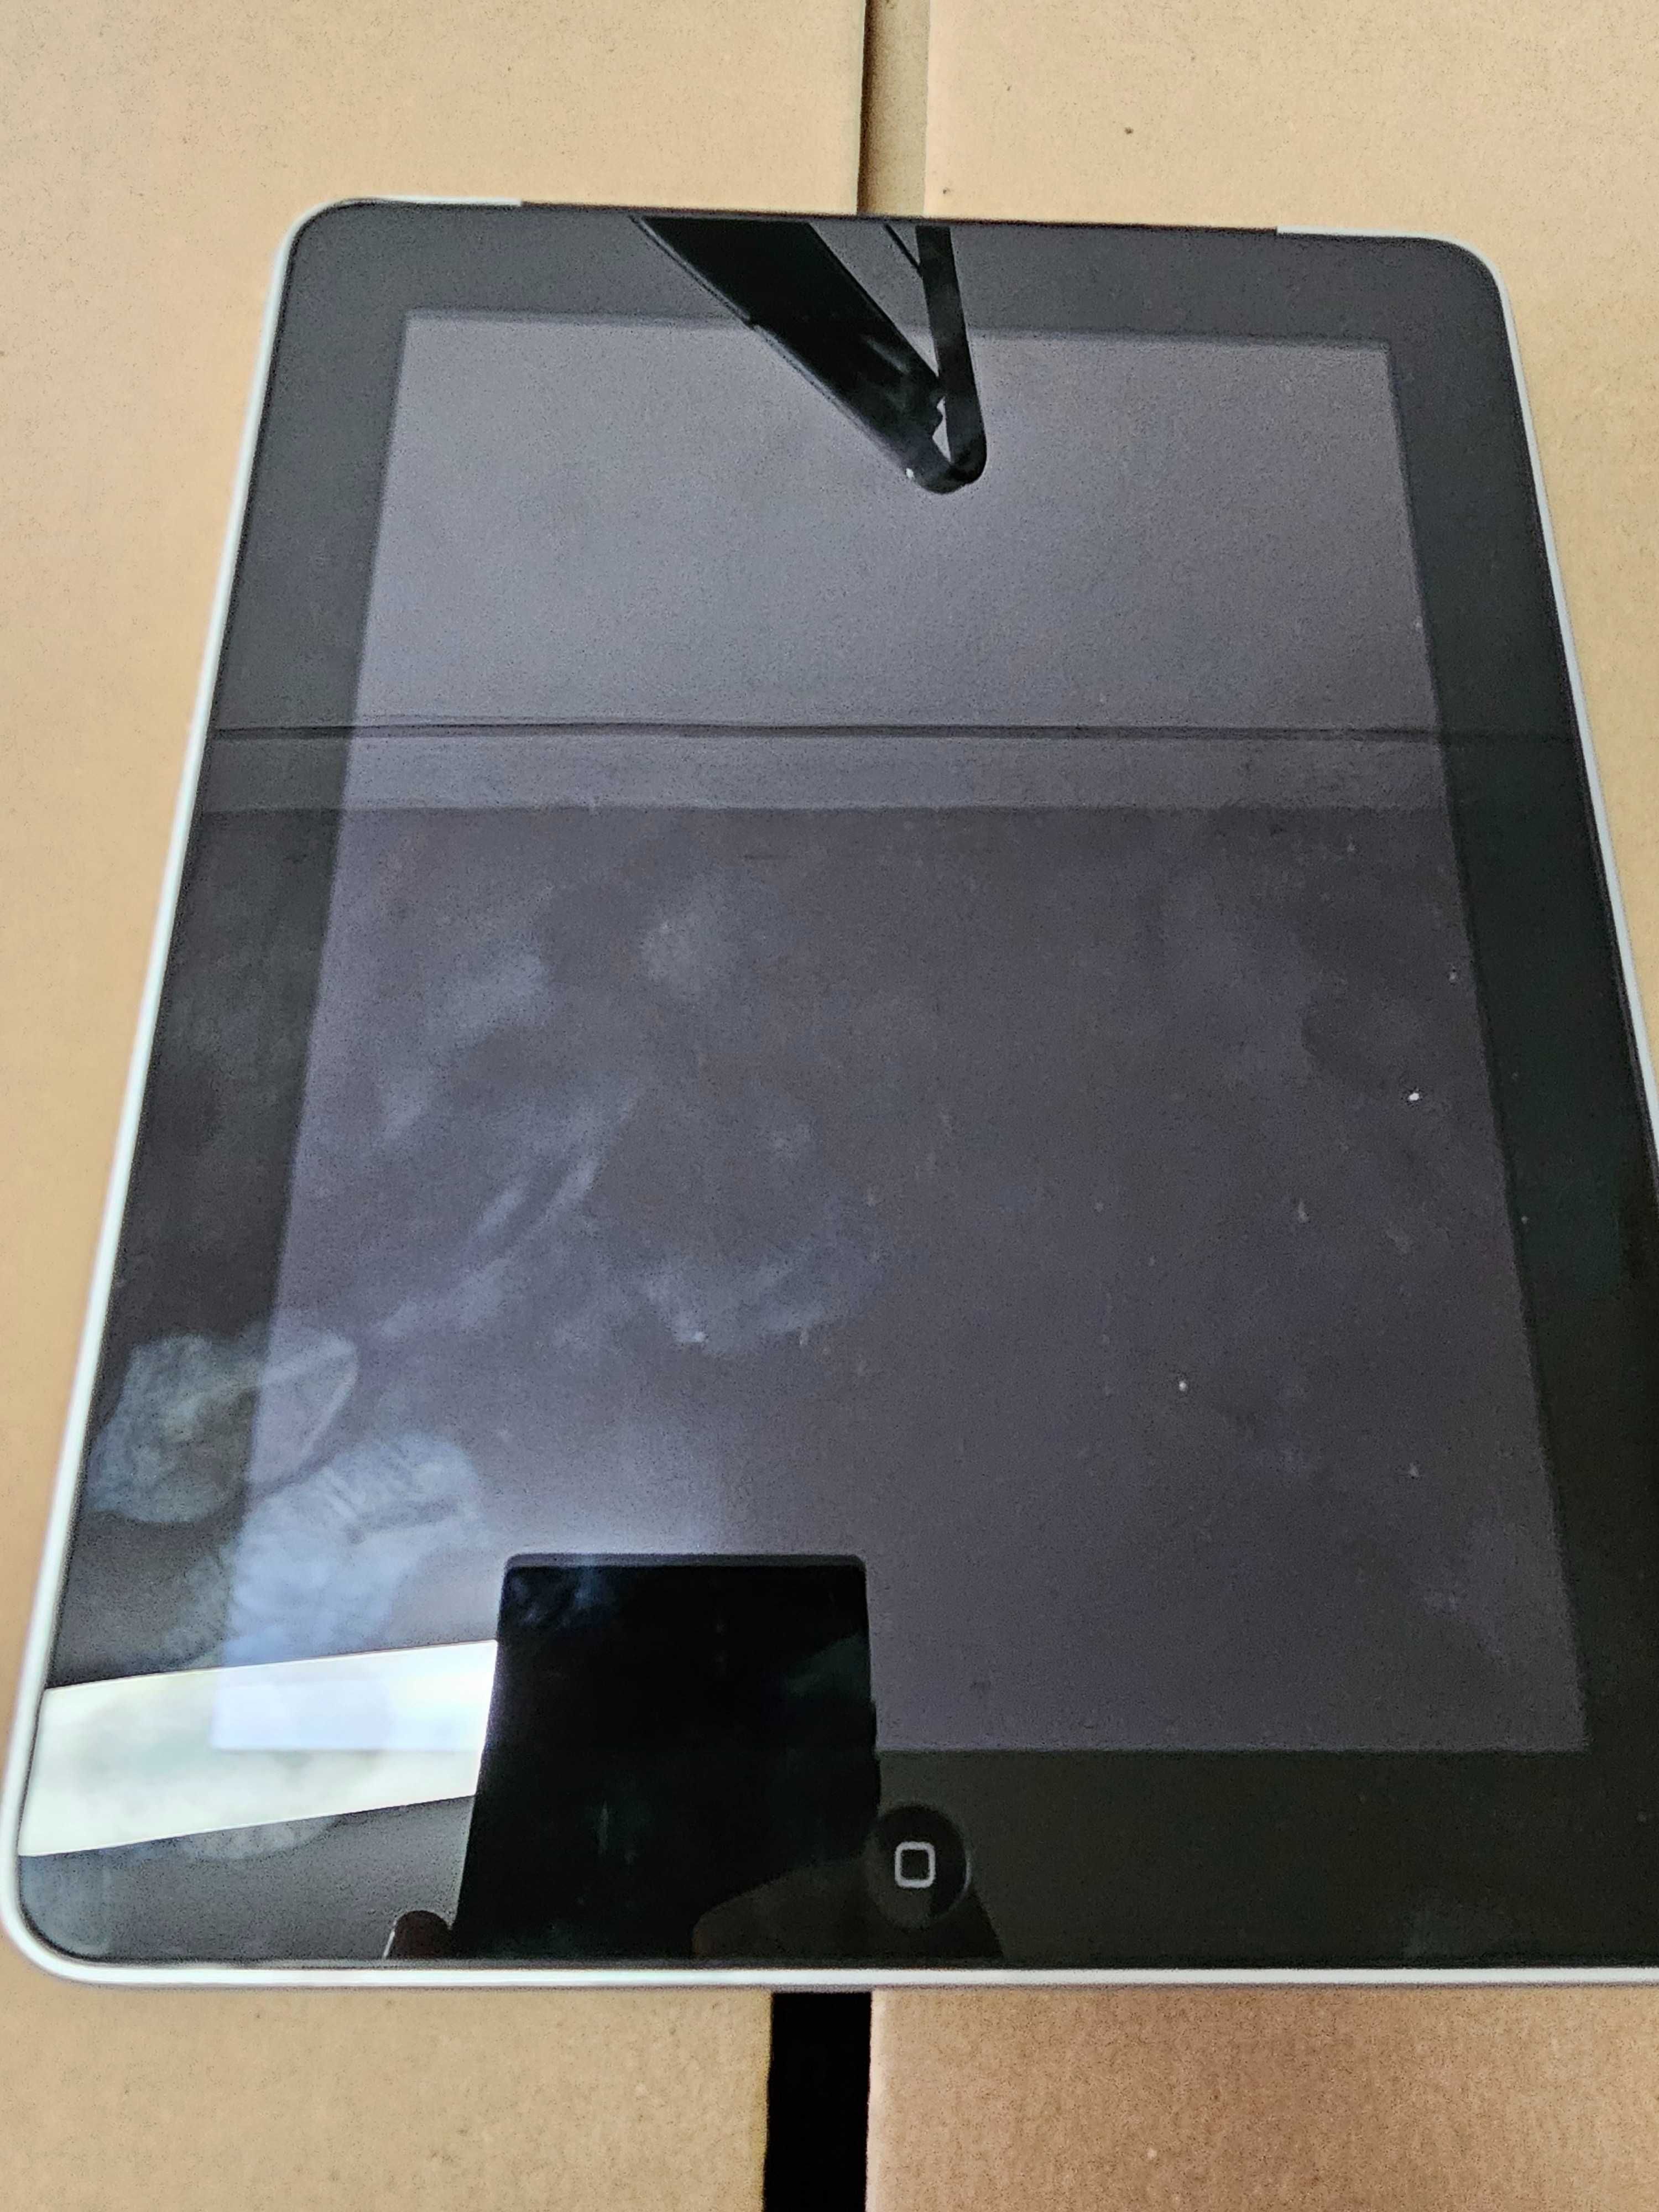 Tablet iPad Model A1337 16GB